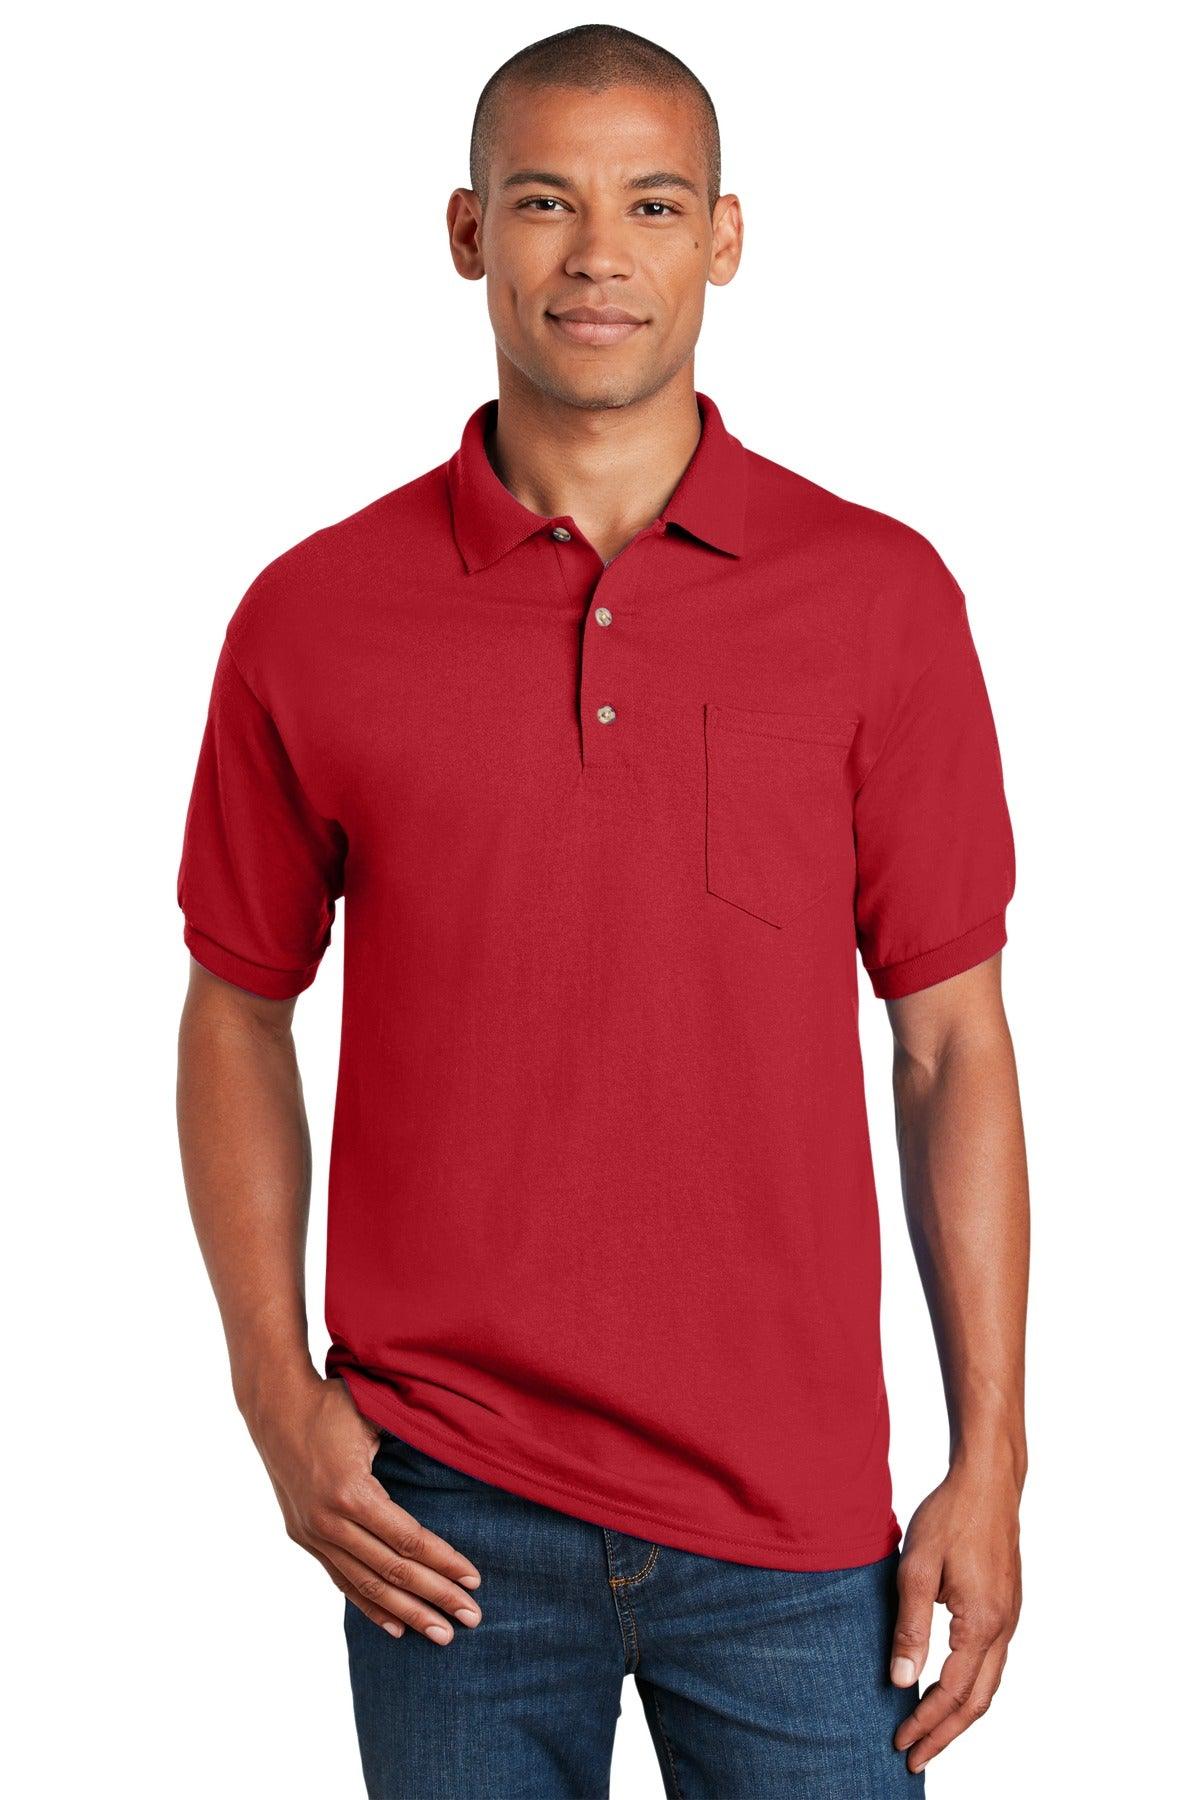 Gildan DryBlend 6-Ounce Jersey Knit Sport Shirt with Pocket. 8900 - Dresses Max